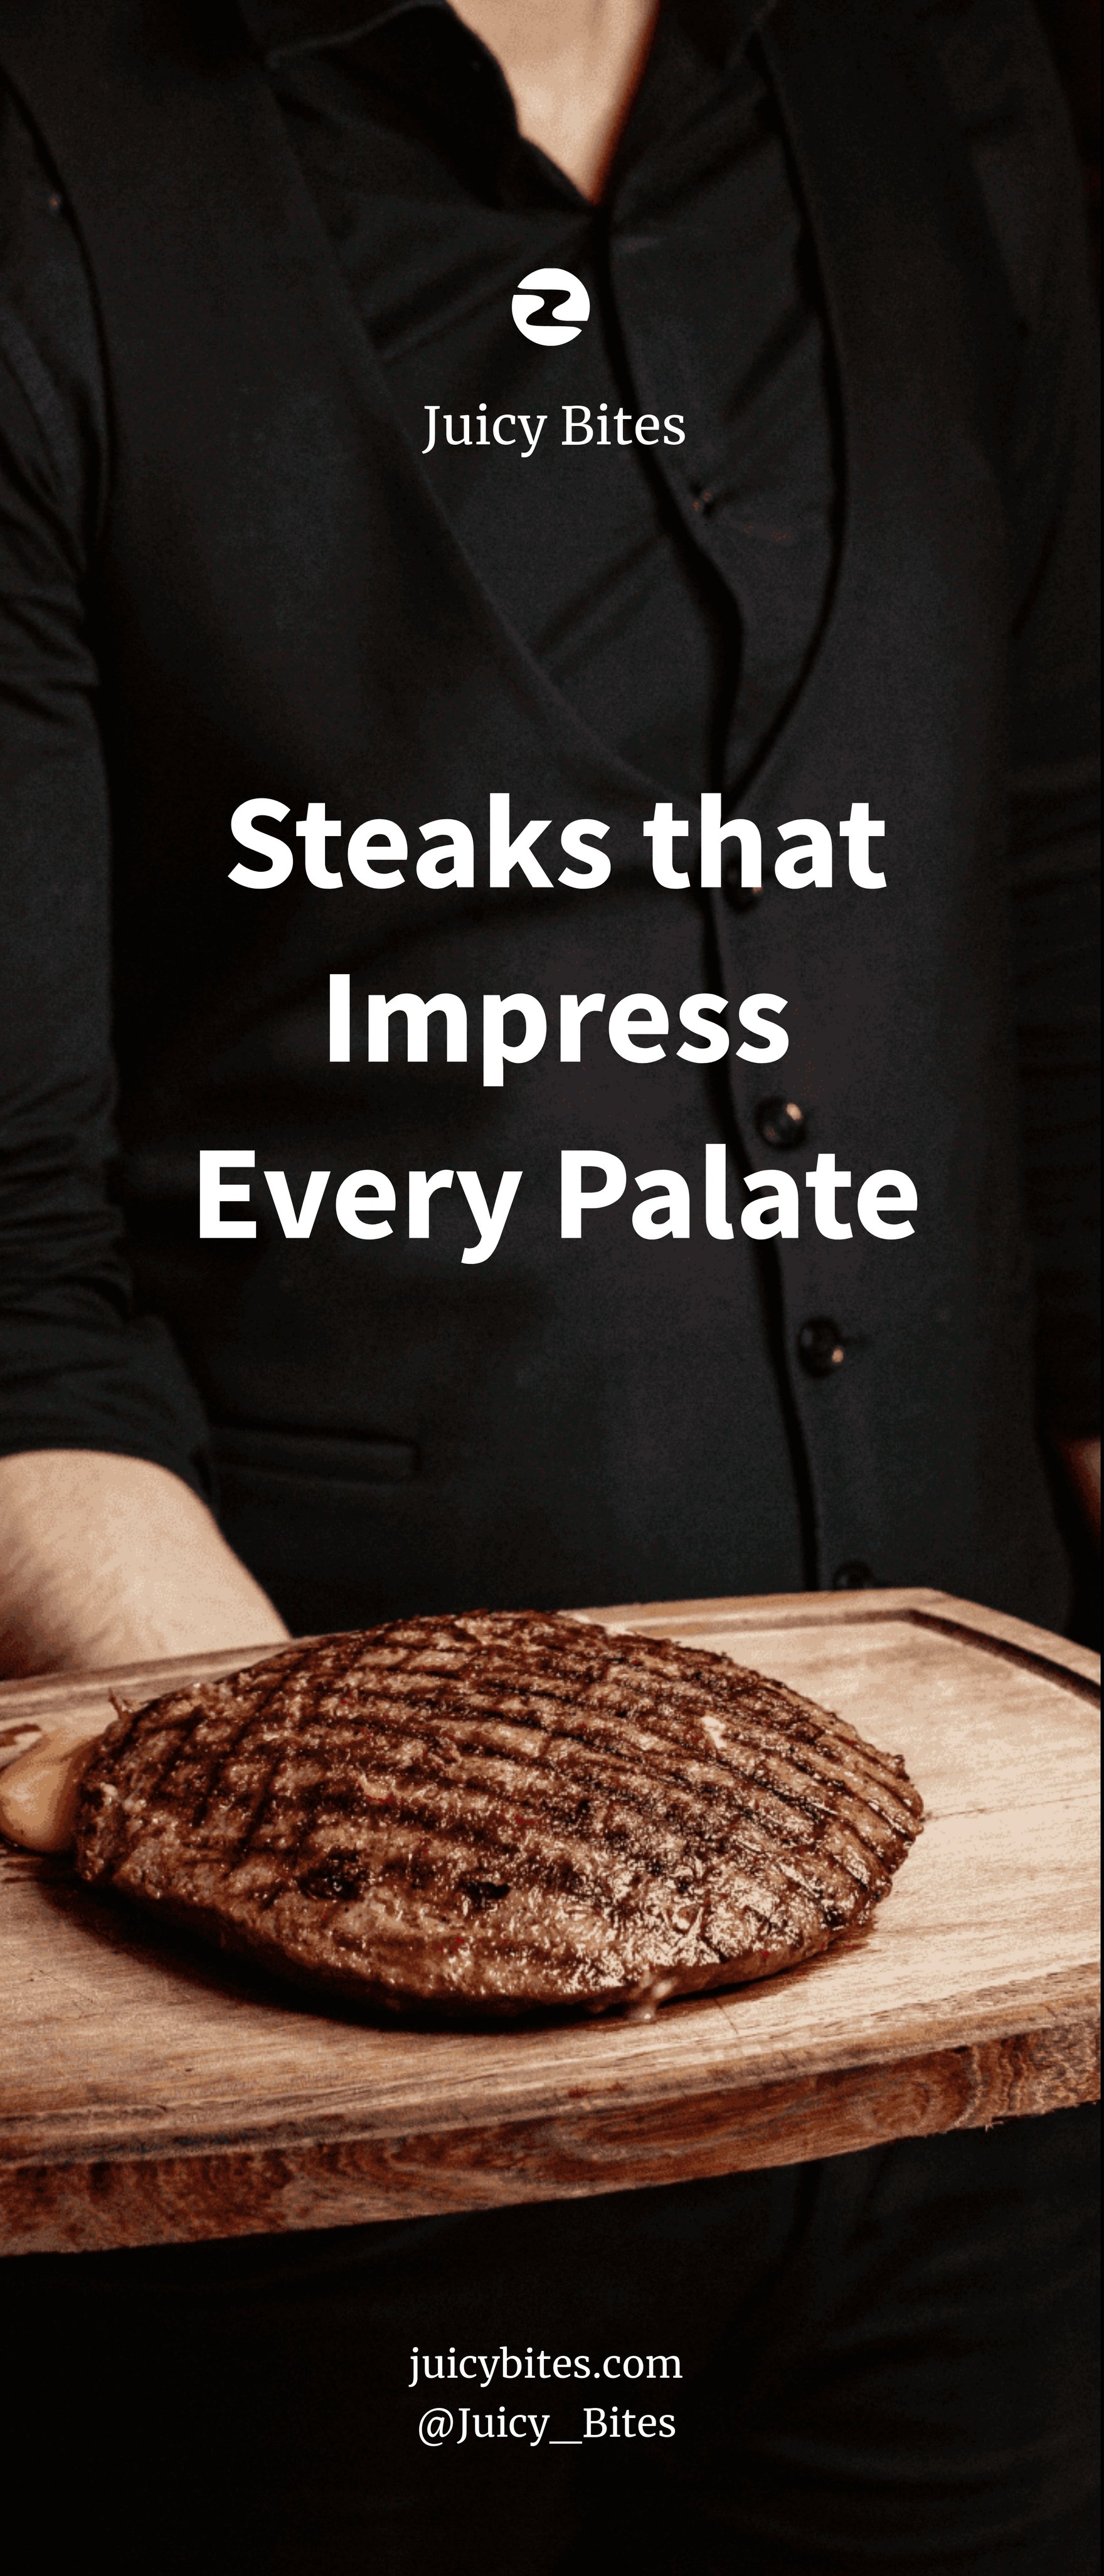 Steak Roll-Up Banner Template